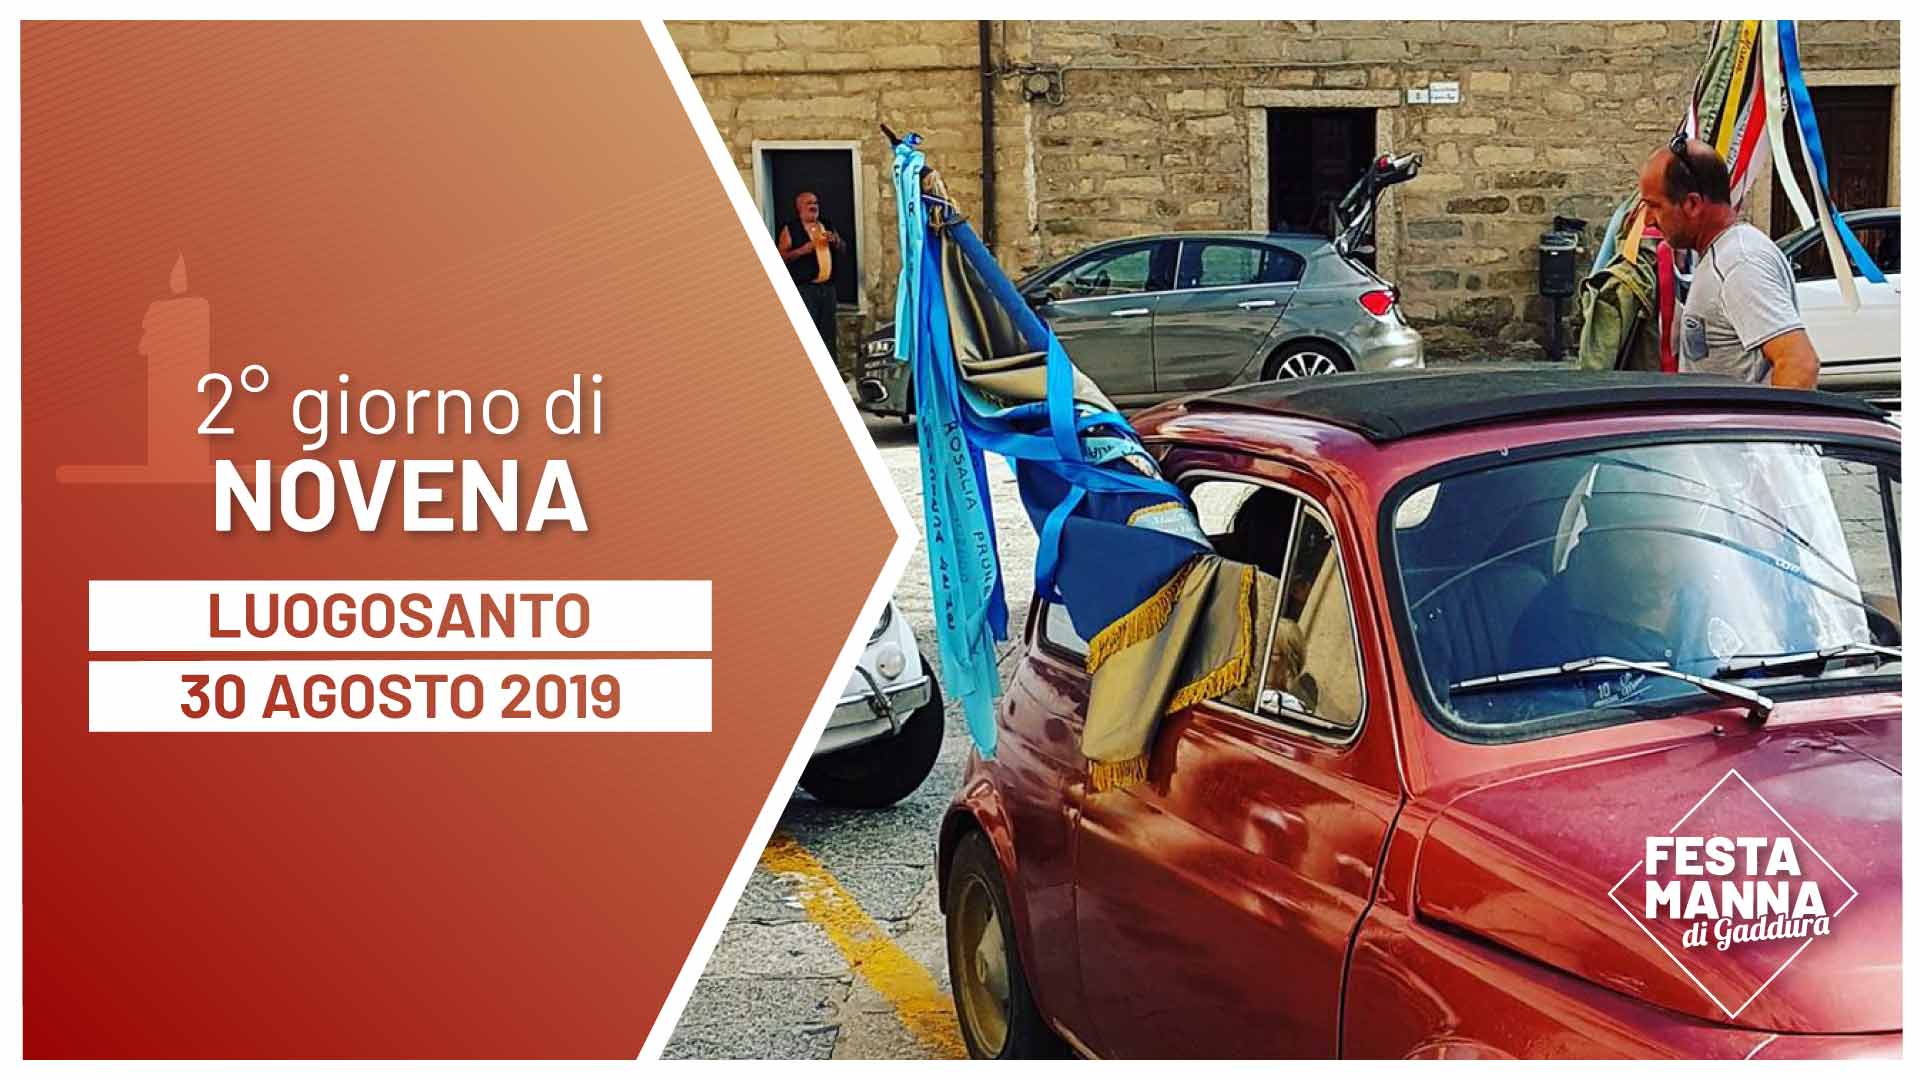 Zweiter Tag der Novene | Festa Manna di Gaddura 2019